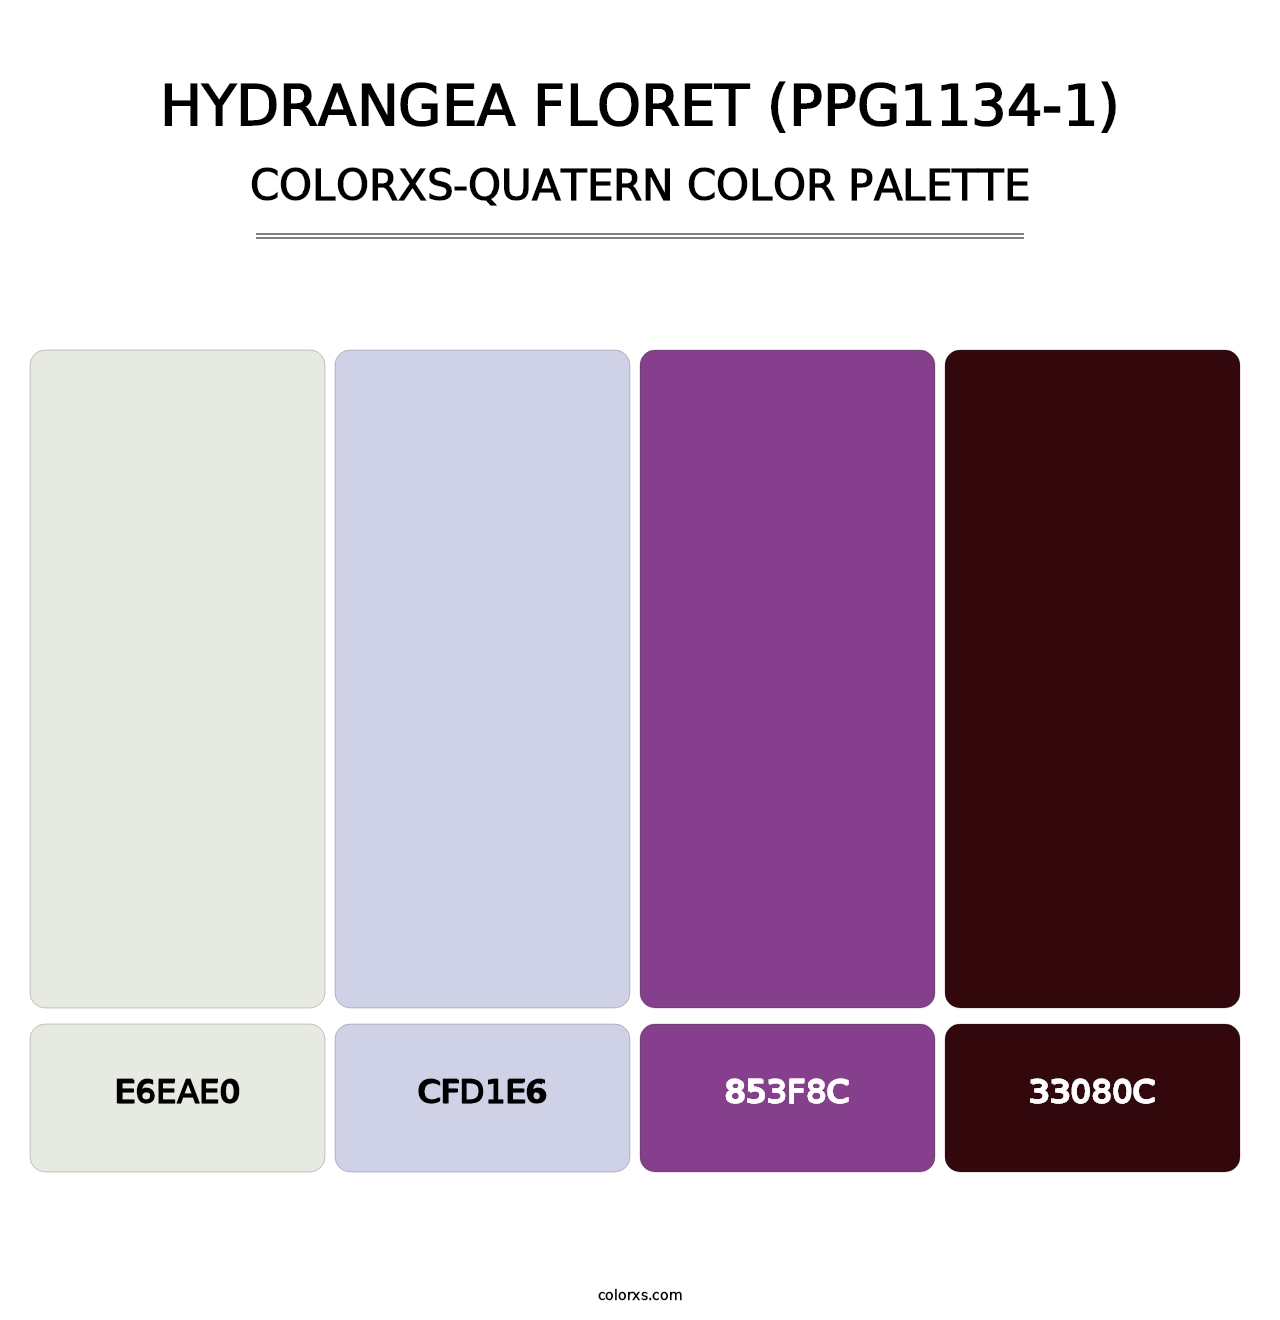 Hydrangea Floret (PPG1134-1) - Colorxs Quatern Palette